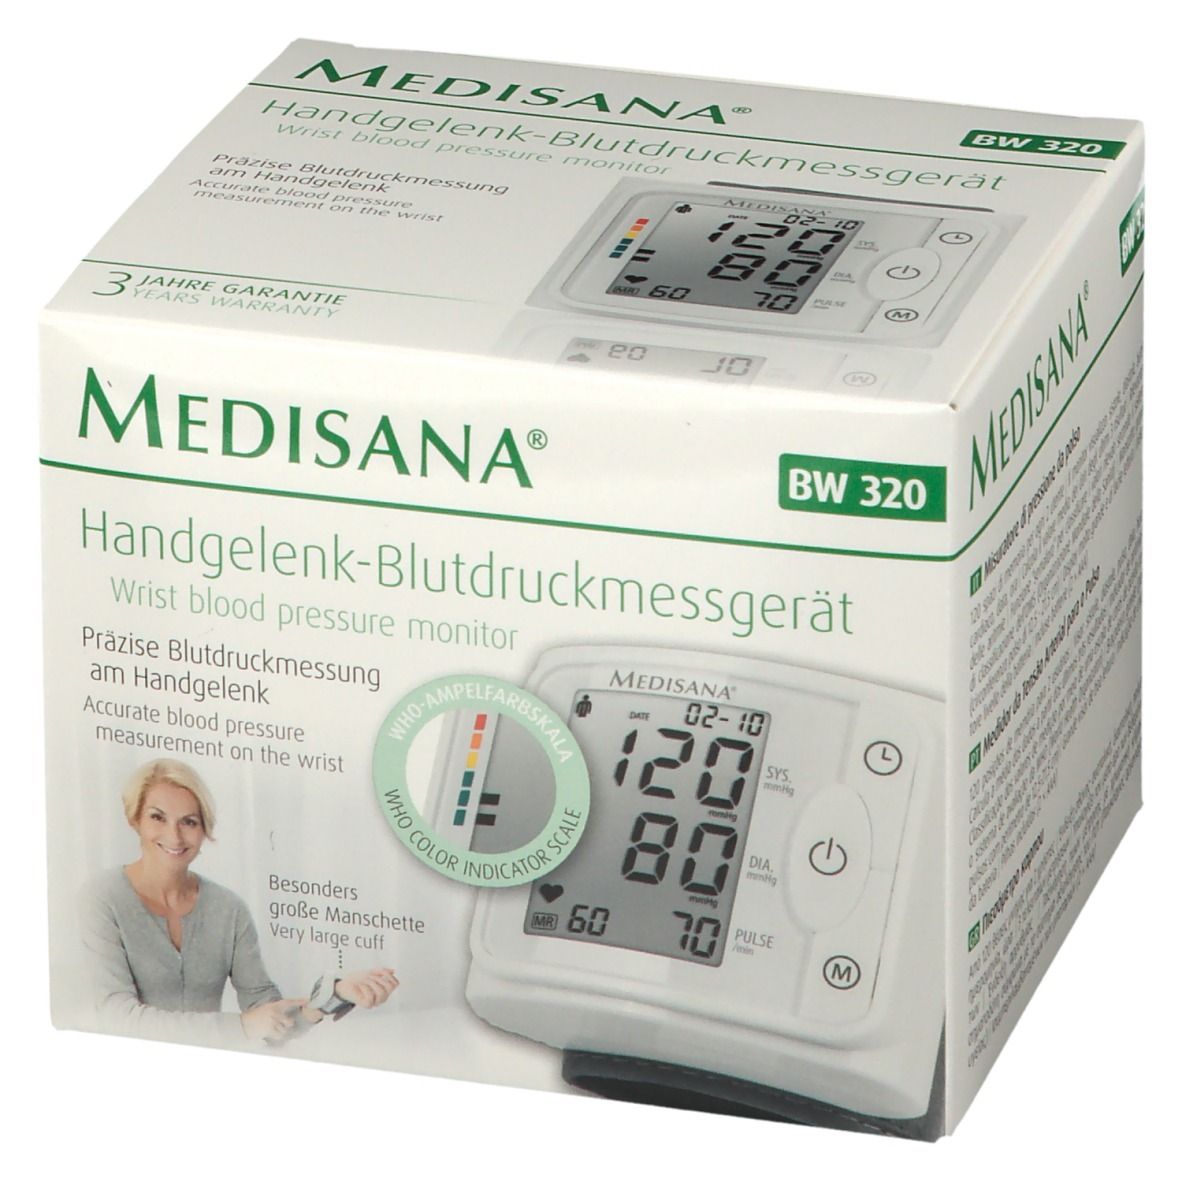 Medisana Handgelenk-Blutdruckmessgerät BW 320 1 - Apotheke St Redcare